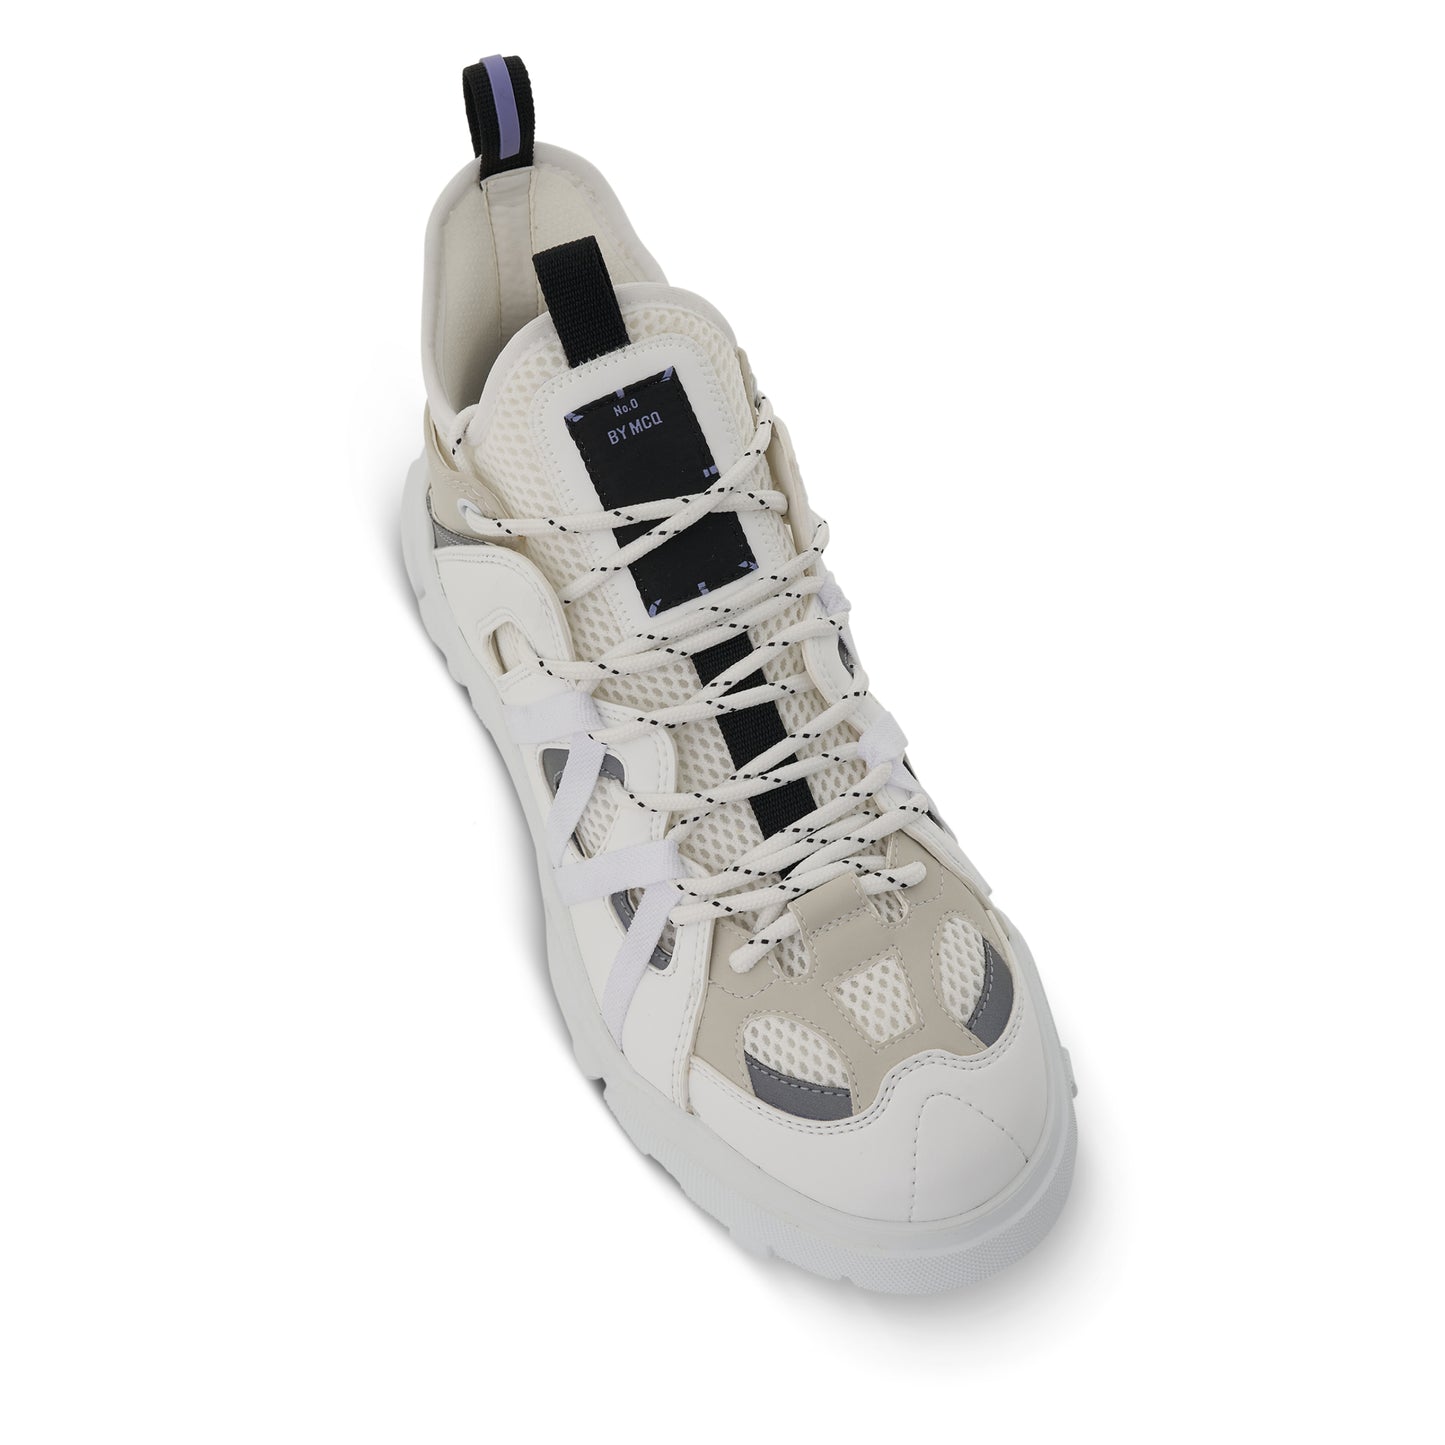 Orbyt 2.0 Sneaker in White